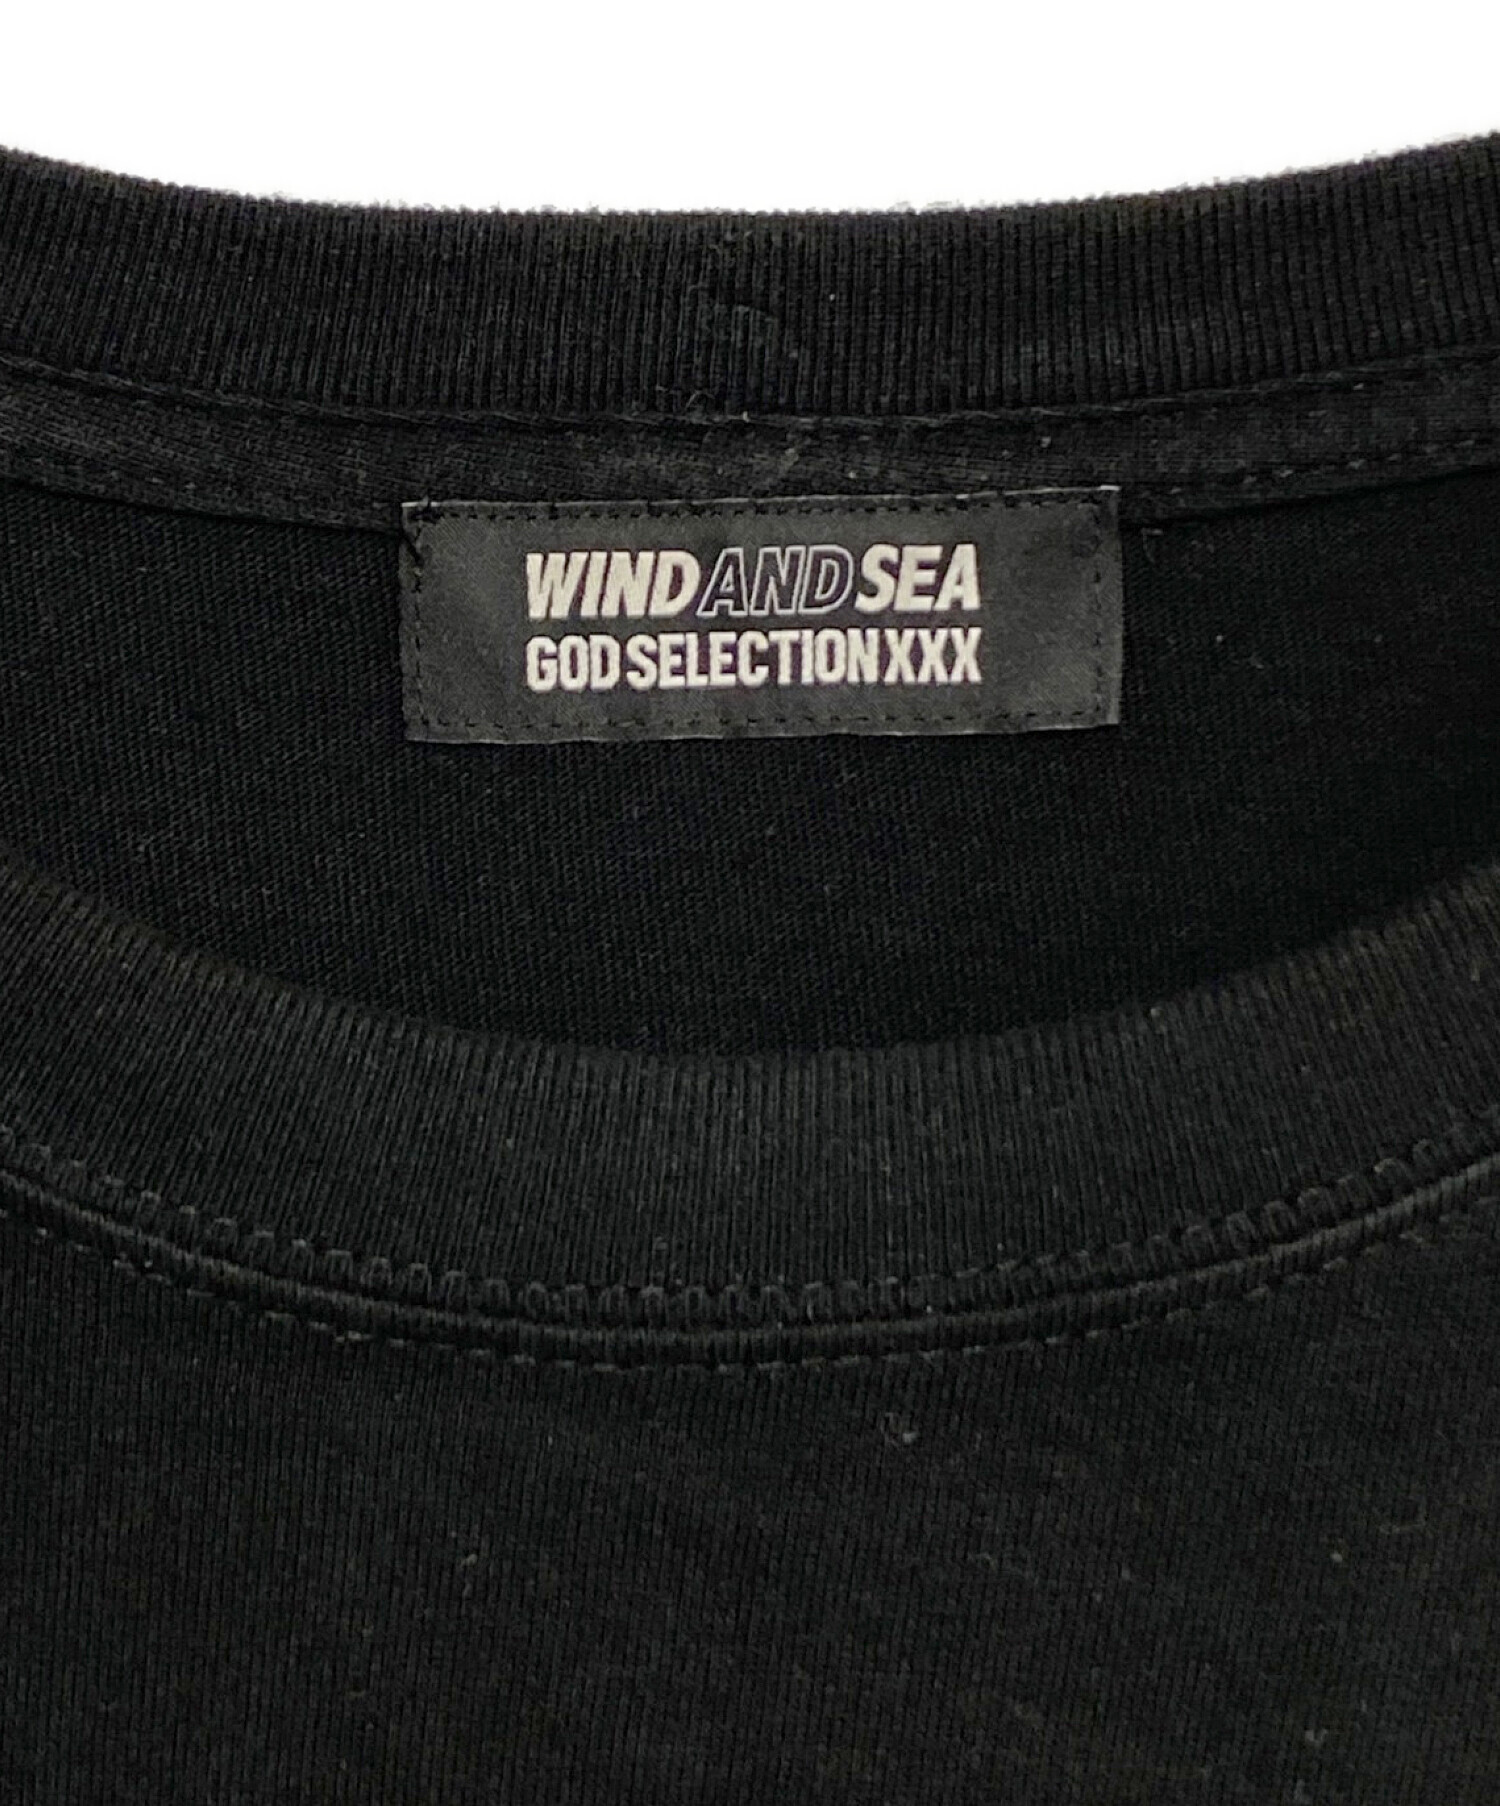 WIND AND SEA (ウィンダンシー) GOD SELECTION XXX (ゴッドセレクショントリプルエックス) 長袖Tシャツ ブラック  サイズ:XL